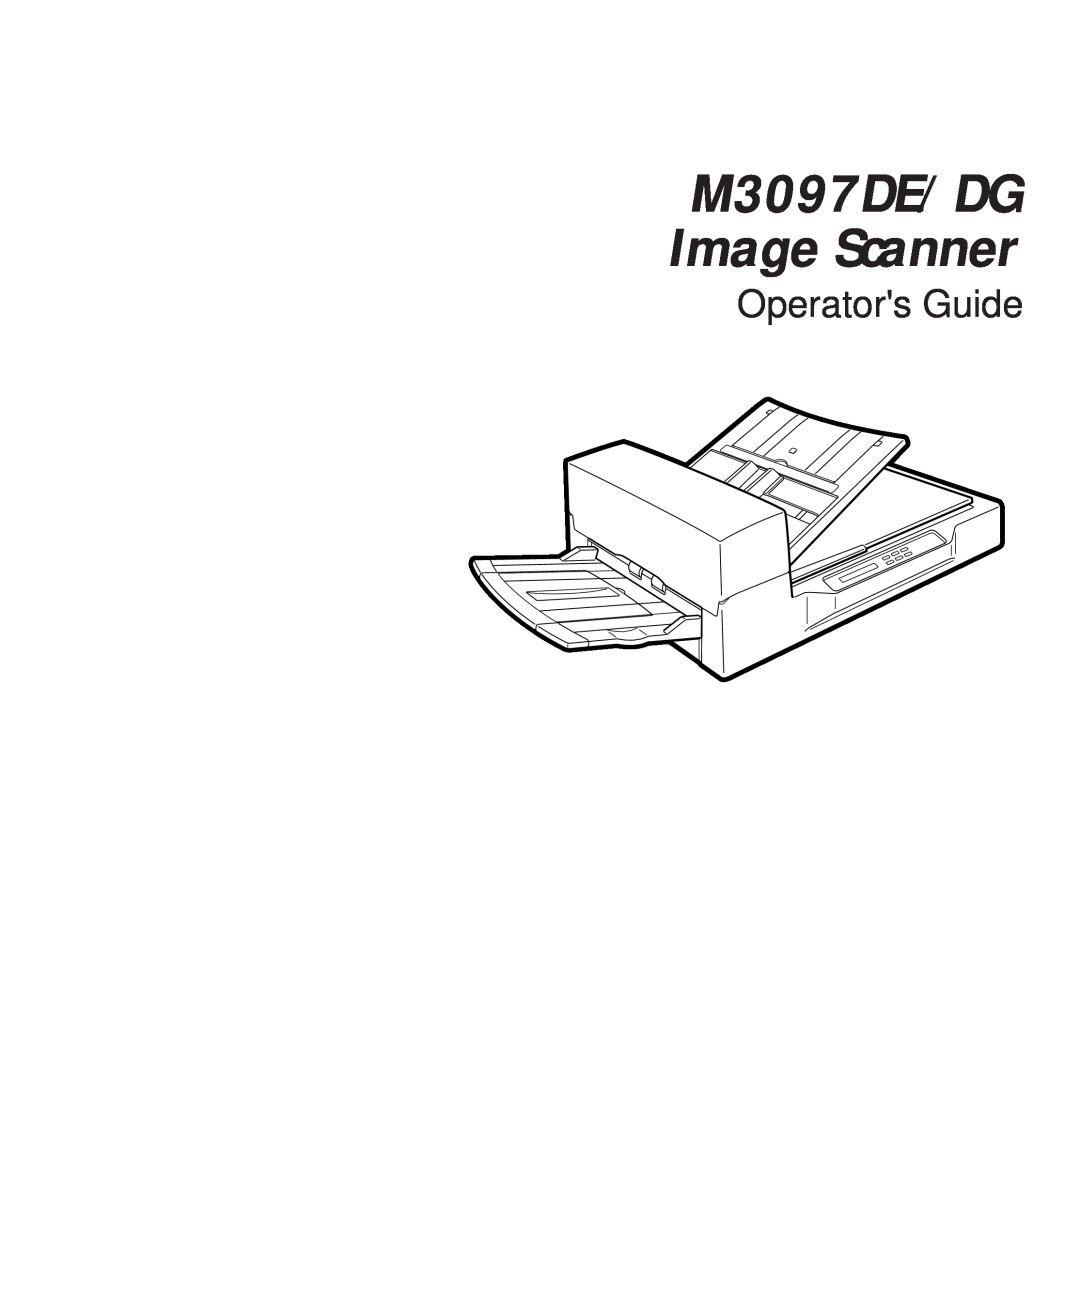 Fujitsu M3097DG manual M3097DE/DG Image Scanner, Operators Guide 